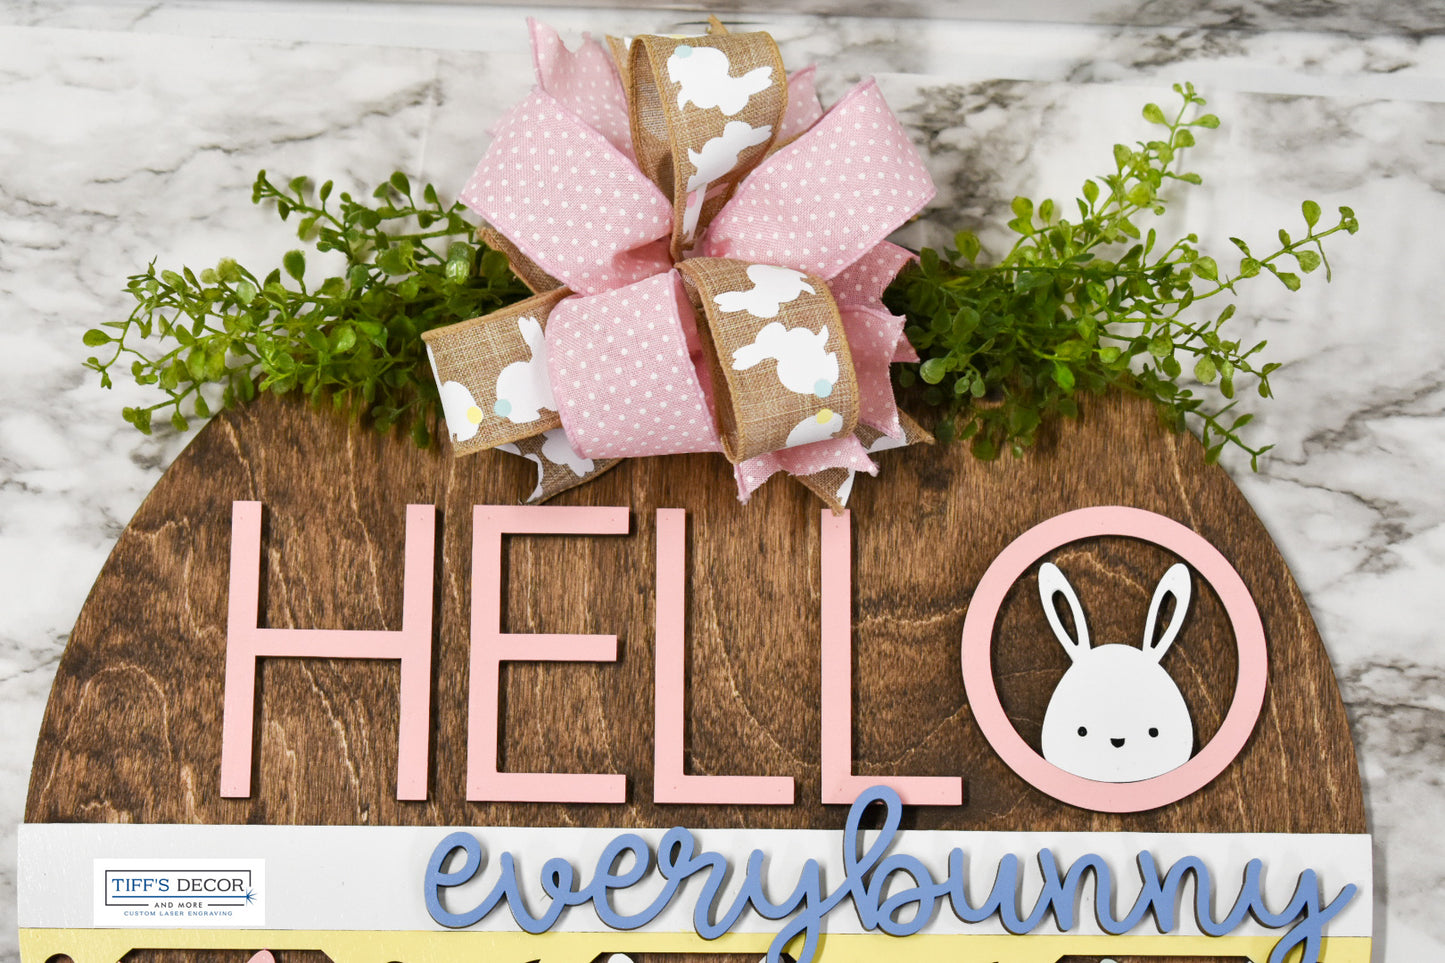 Hello every bunny Easter door sign